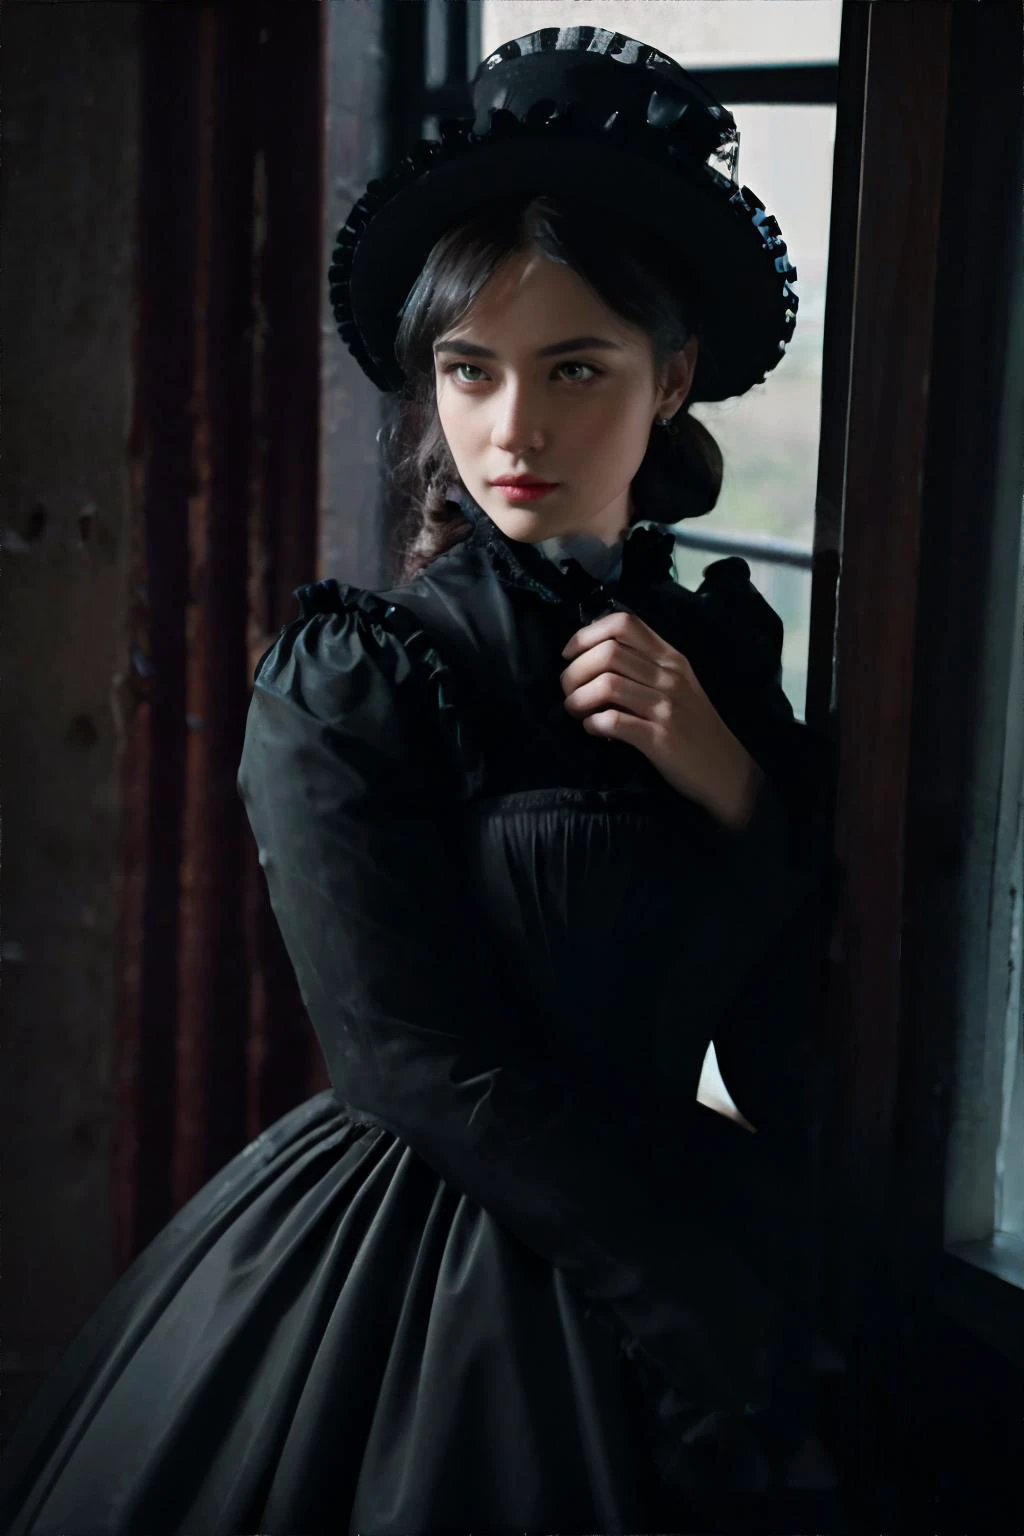 深色主题, 穿着维多利亚时代连衣裙的女人, 望向窗外 || 杰作, 完美品质, 清晰聚焦, 浅景深, 8千